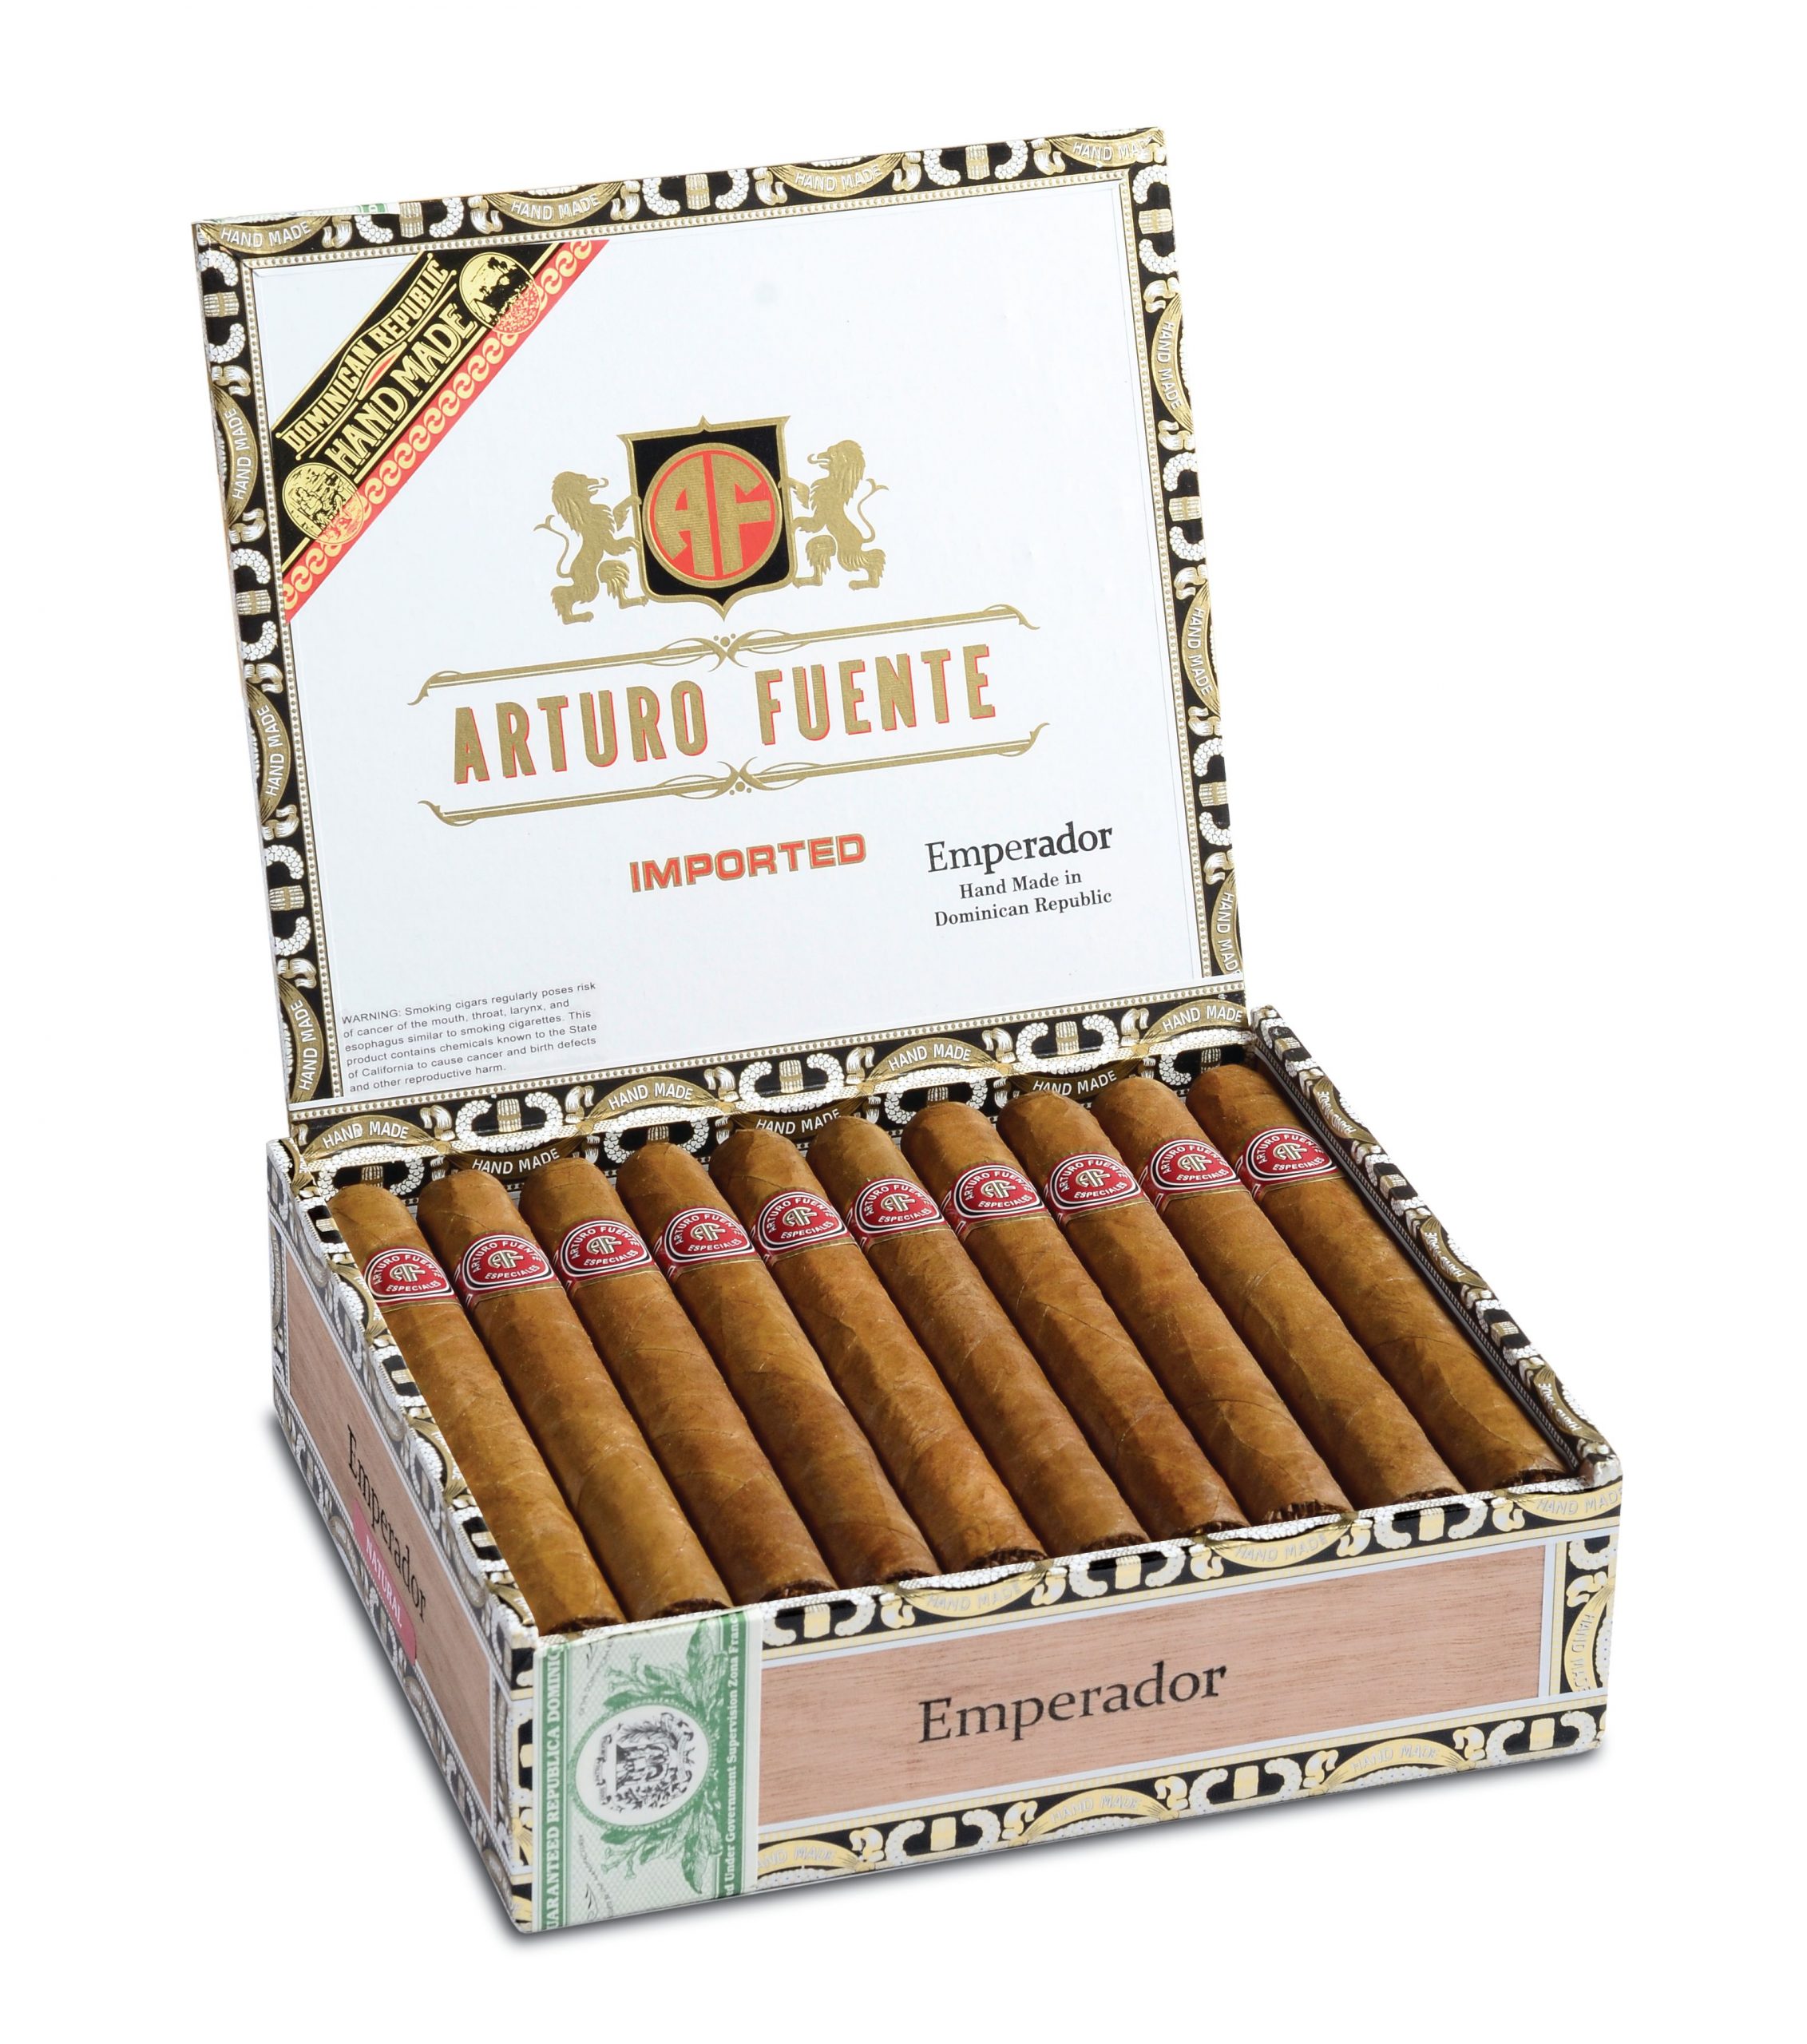 Open box of 30 count Arturo Fuente Especiales Emperador cigars